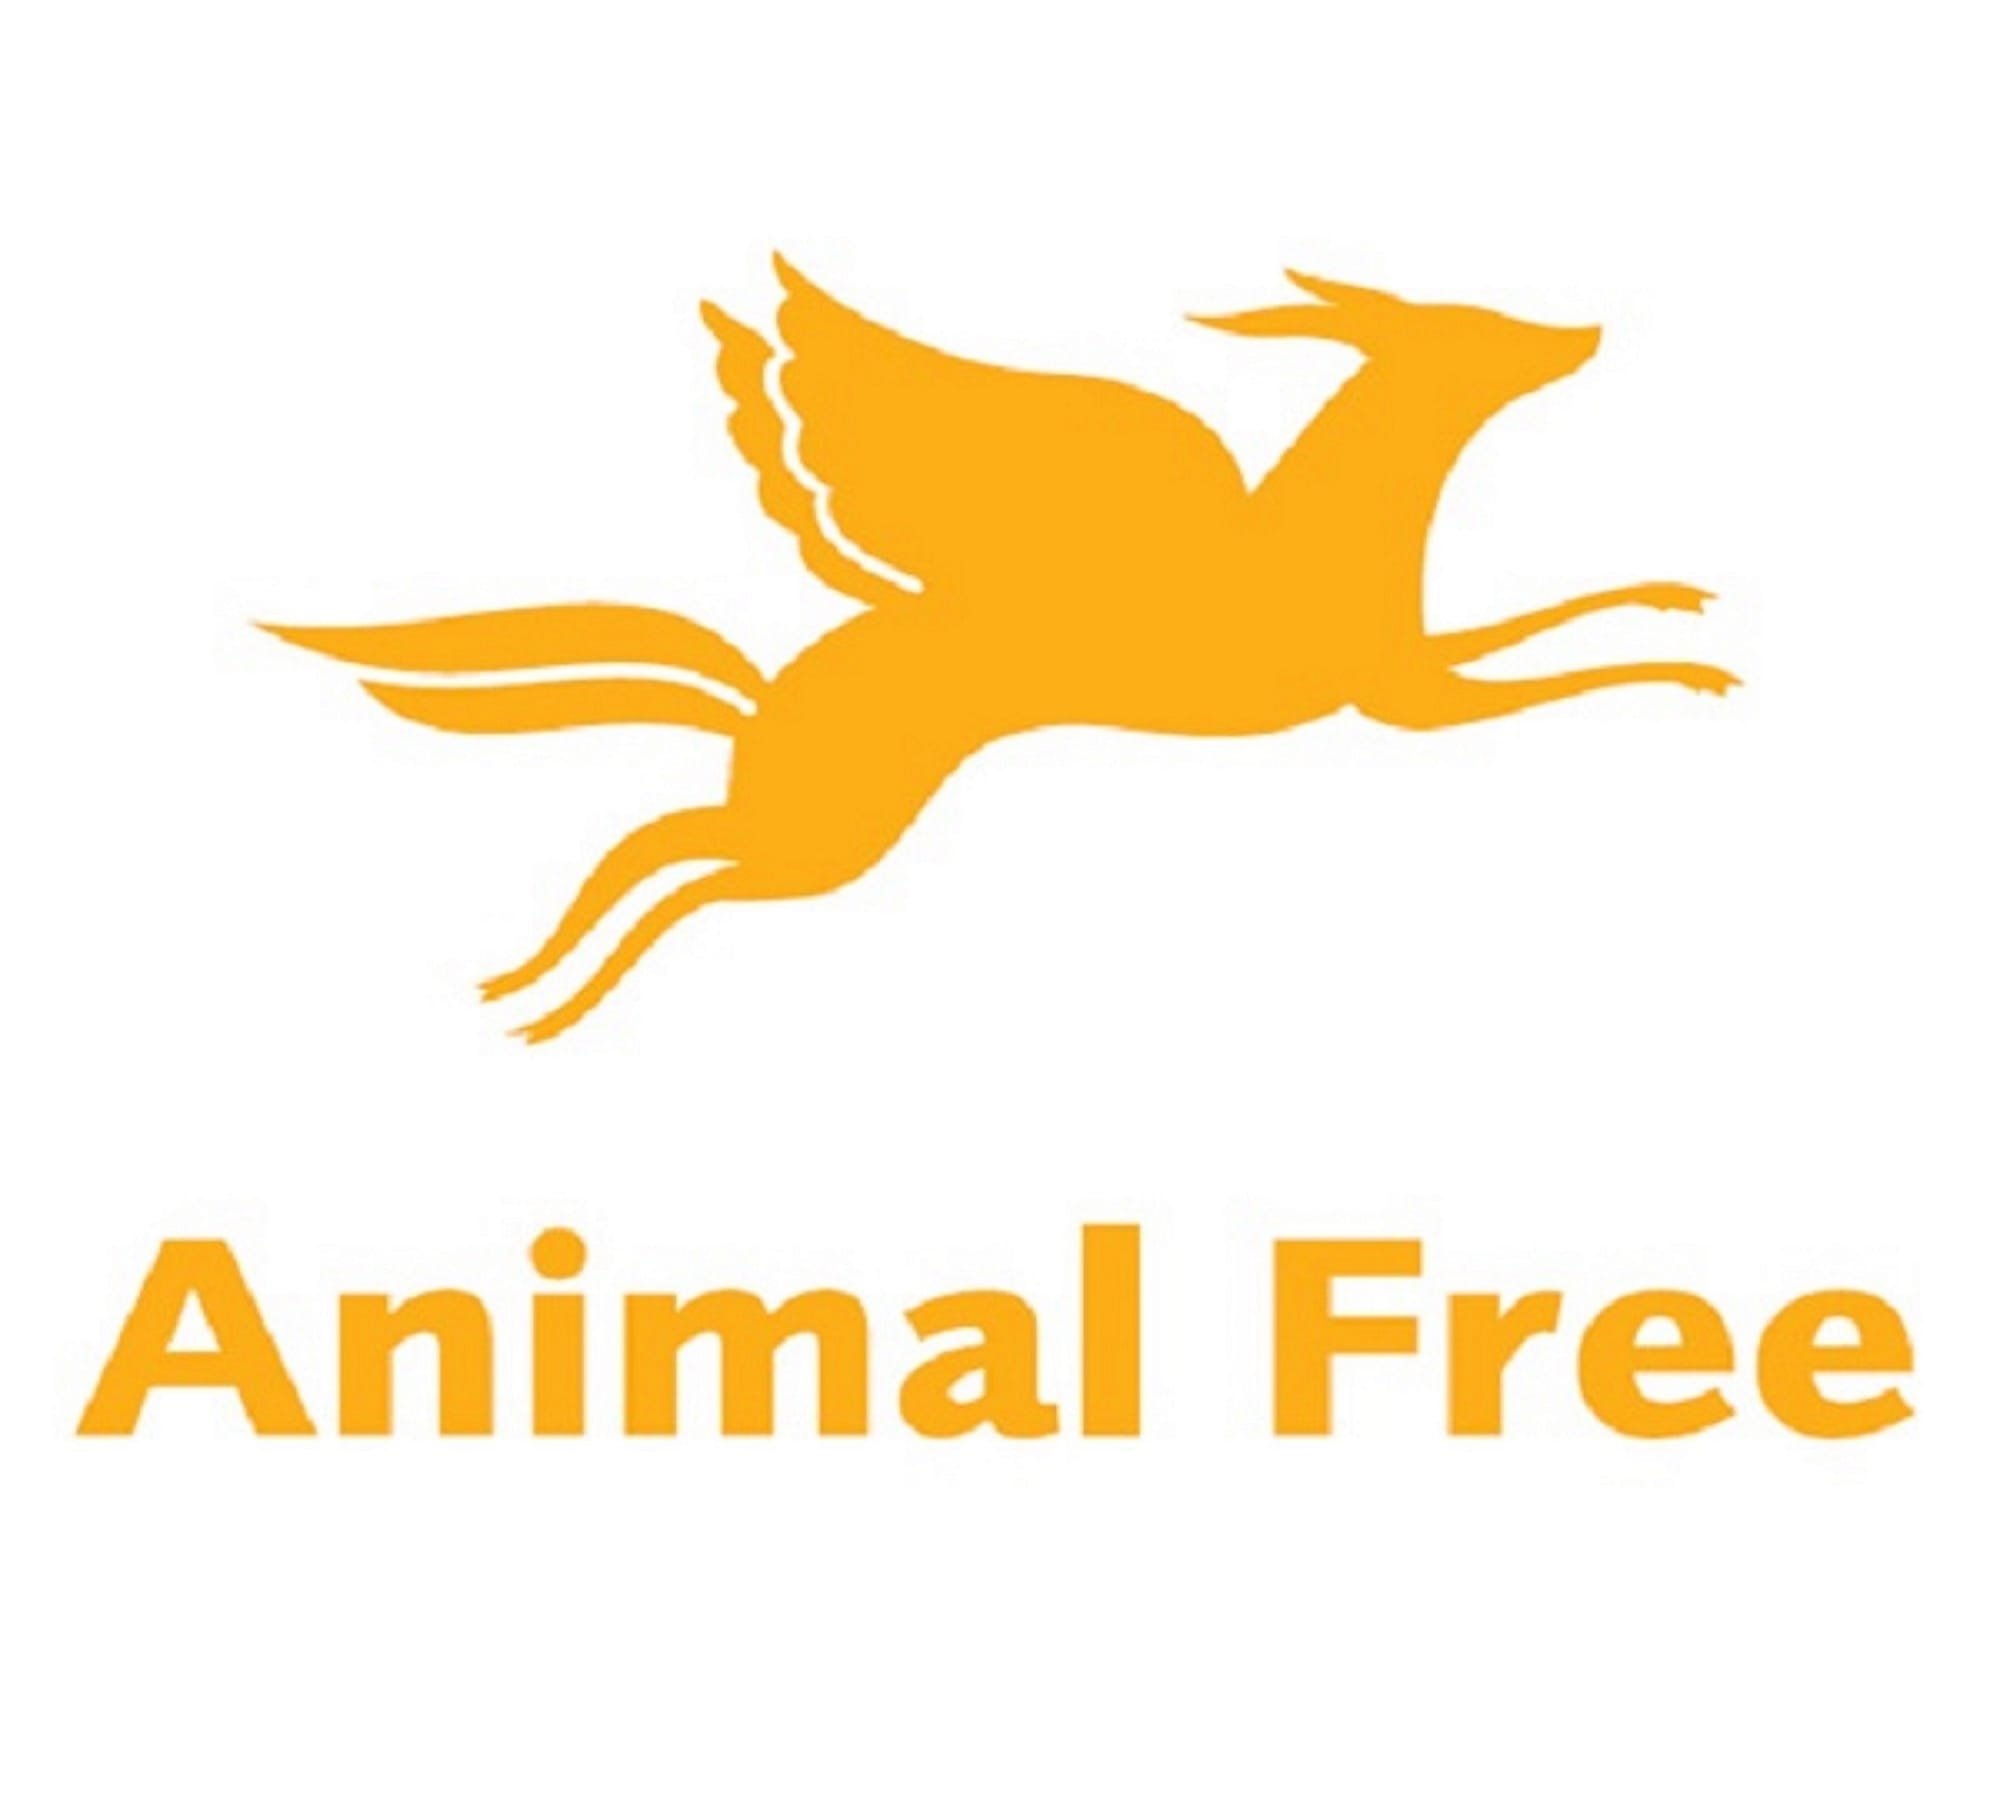 100% Animal Free